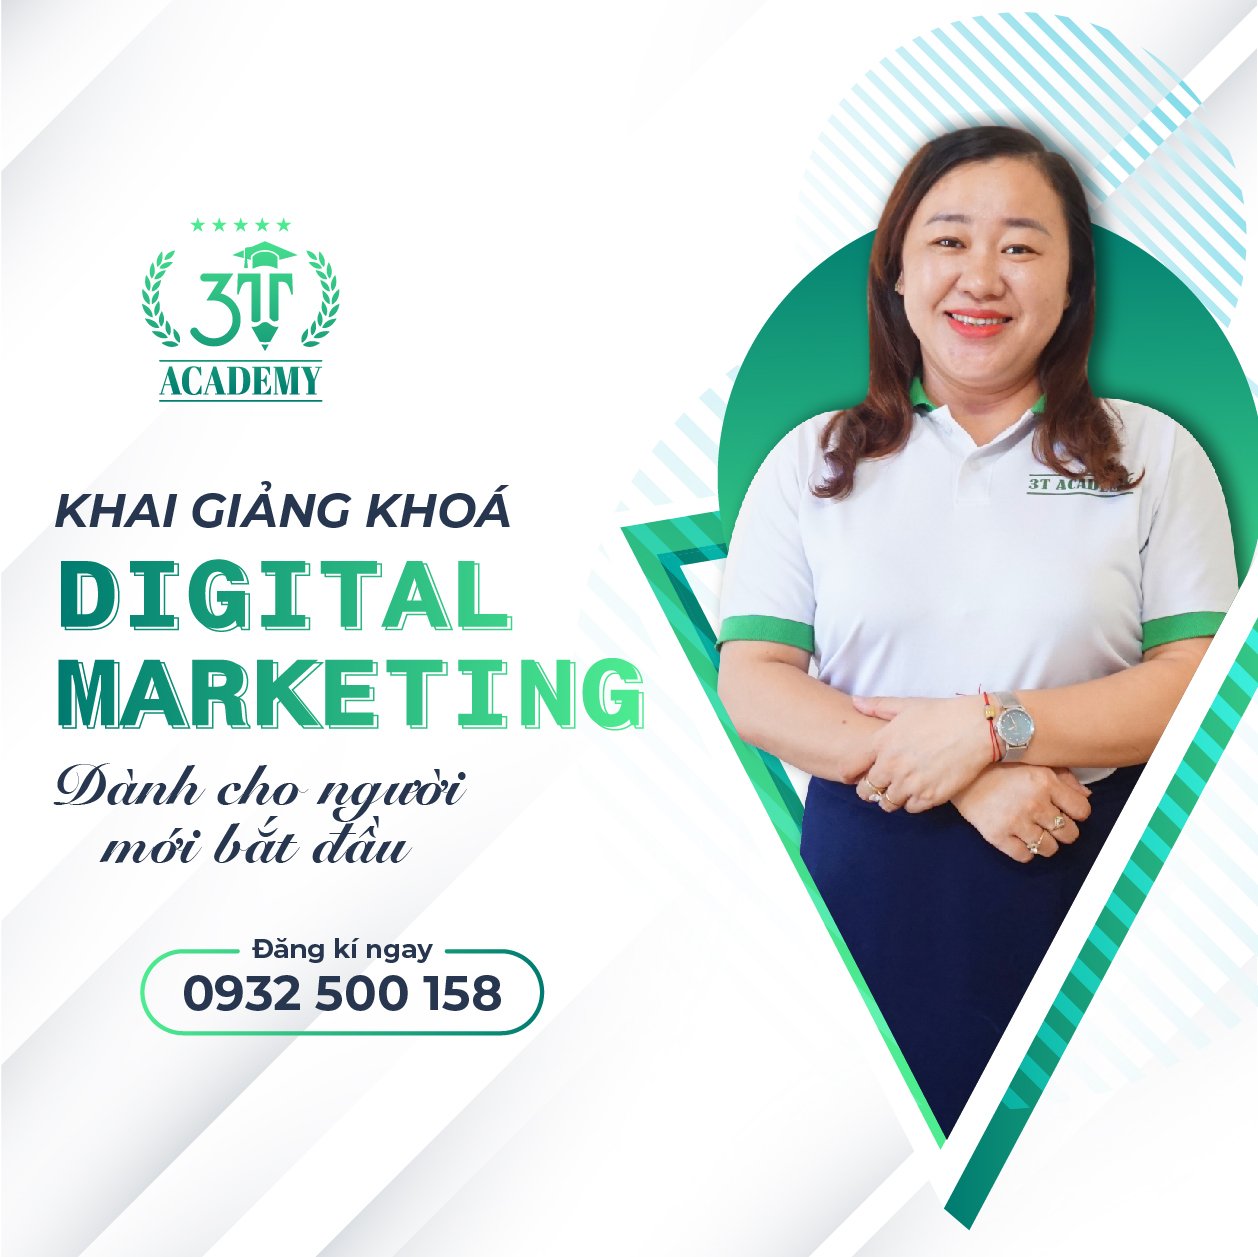 Ms Thai Thu, giảng viên khóa học Digital Marketing 